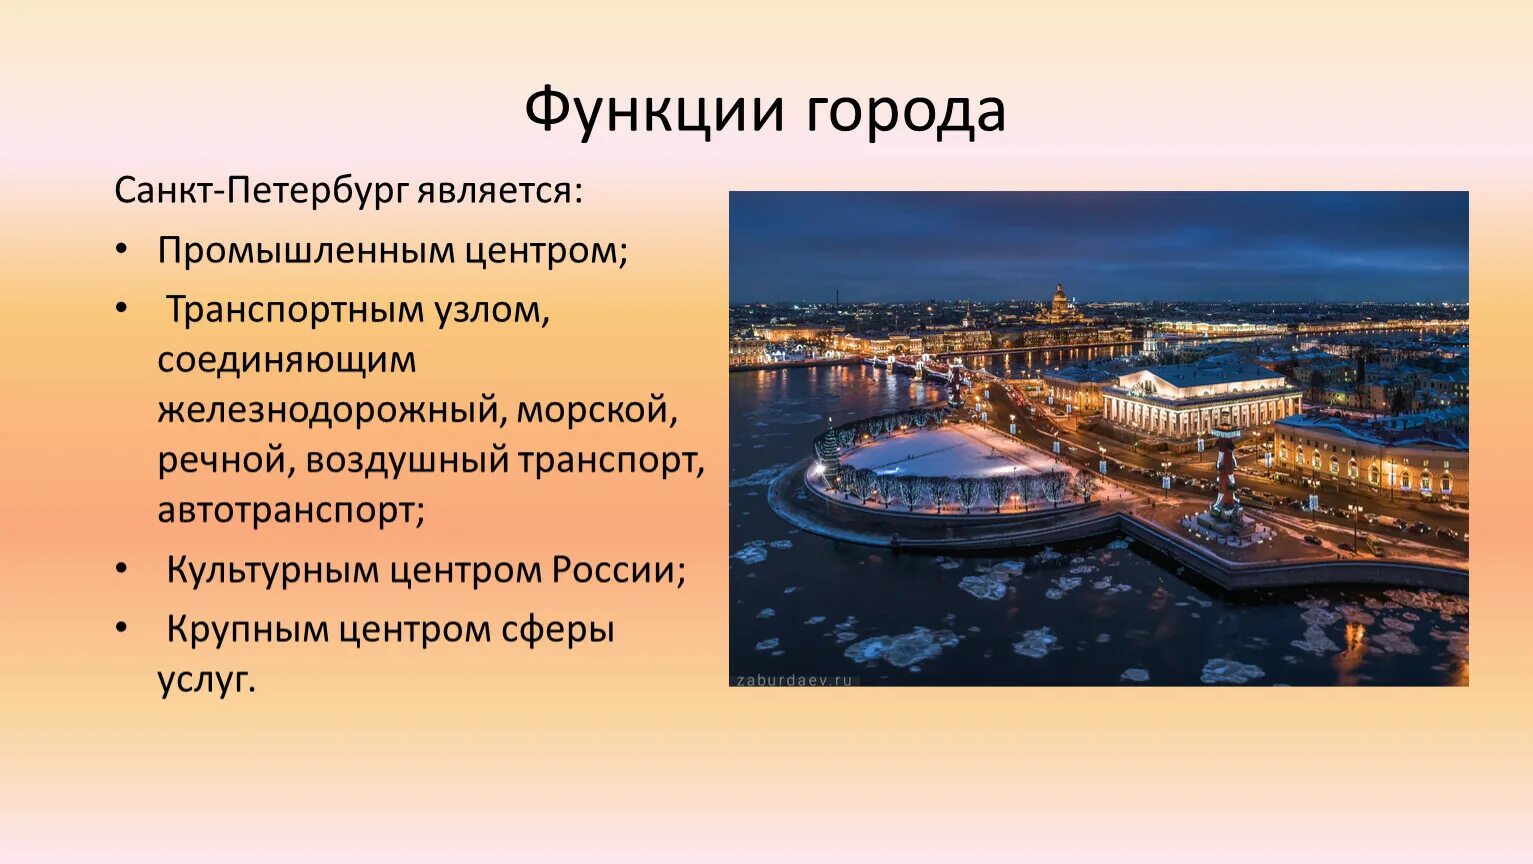 Является административным центром. Функции города Санкт-Петербурга. Функции Питера. Функции Санкт Петербурга в прошлом. Презентация про город Санкт-Петербург.